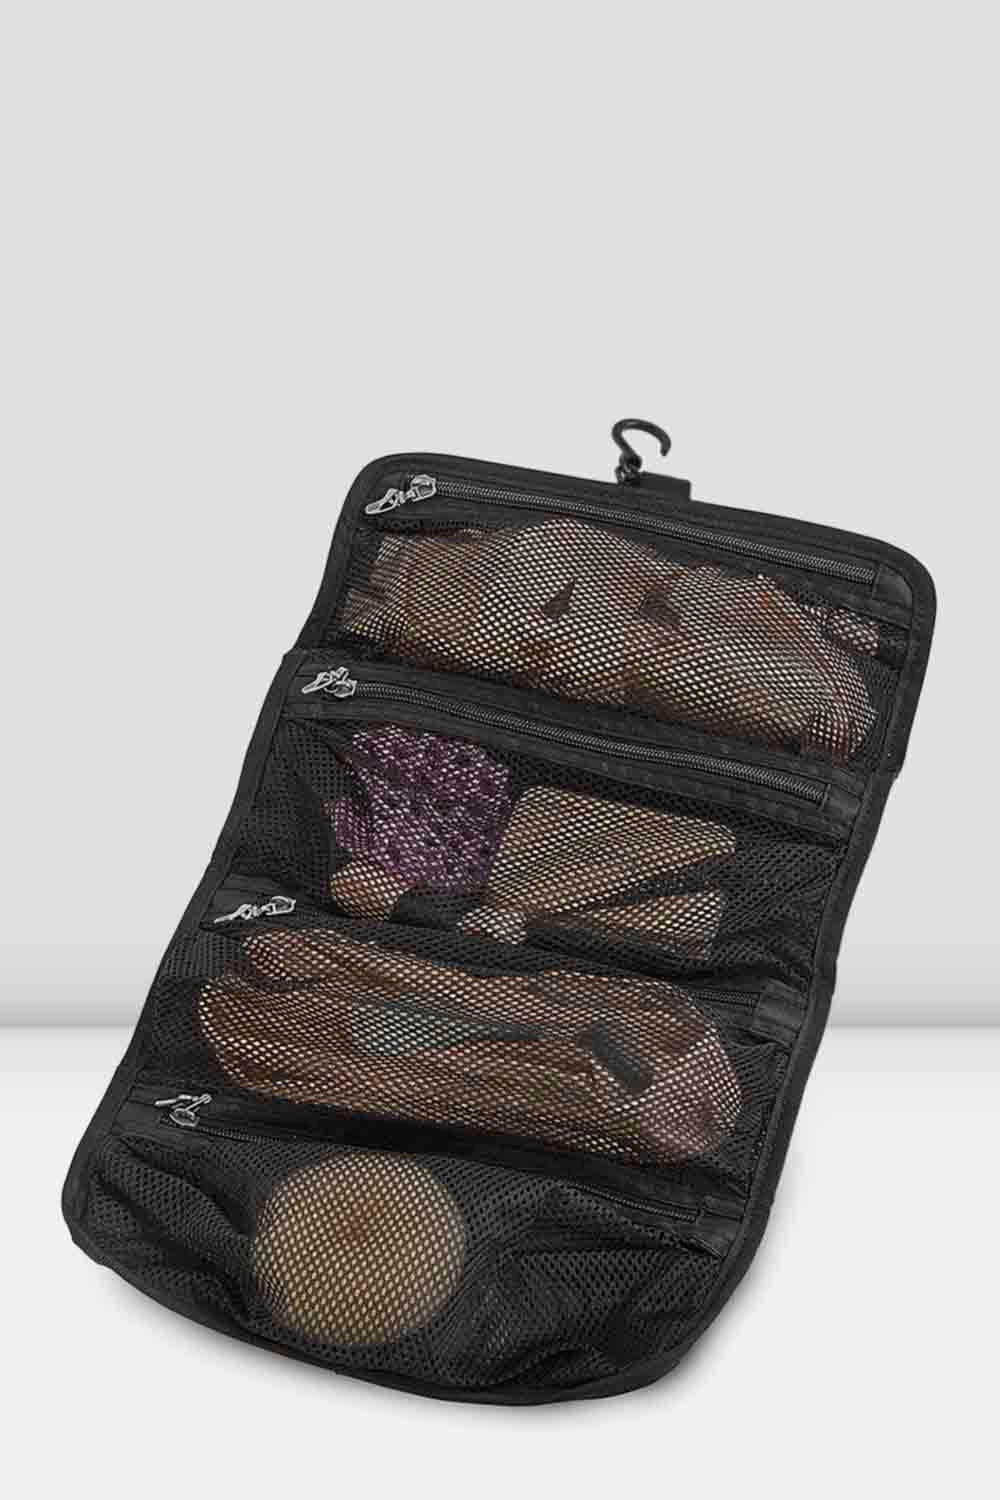 BLOCH Organizer Bag - Borsa porta accessori danza classica (nastri,punte,ecc) A318